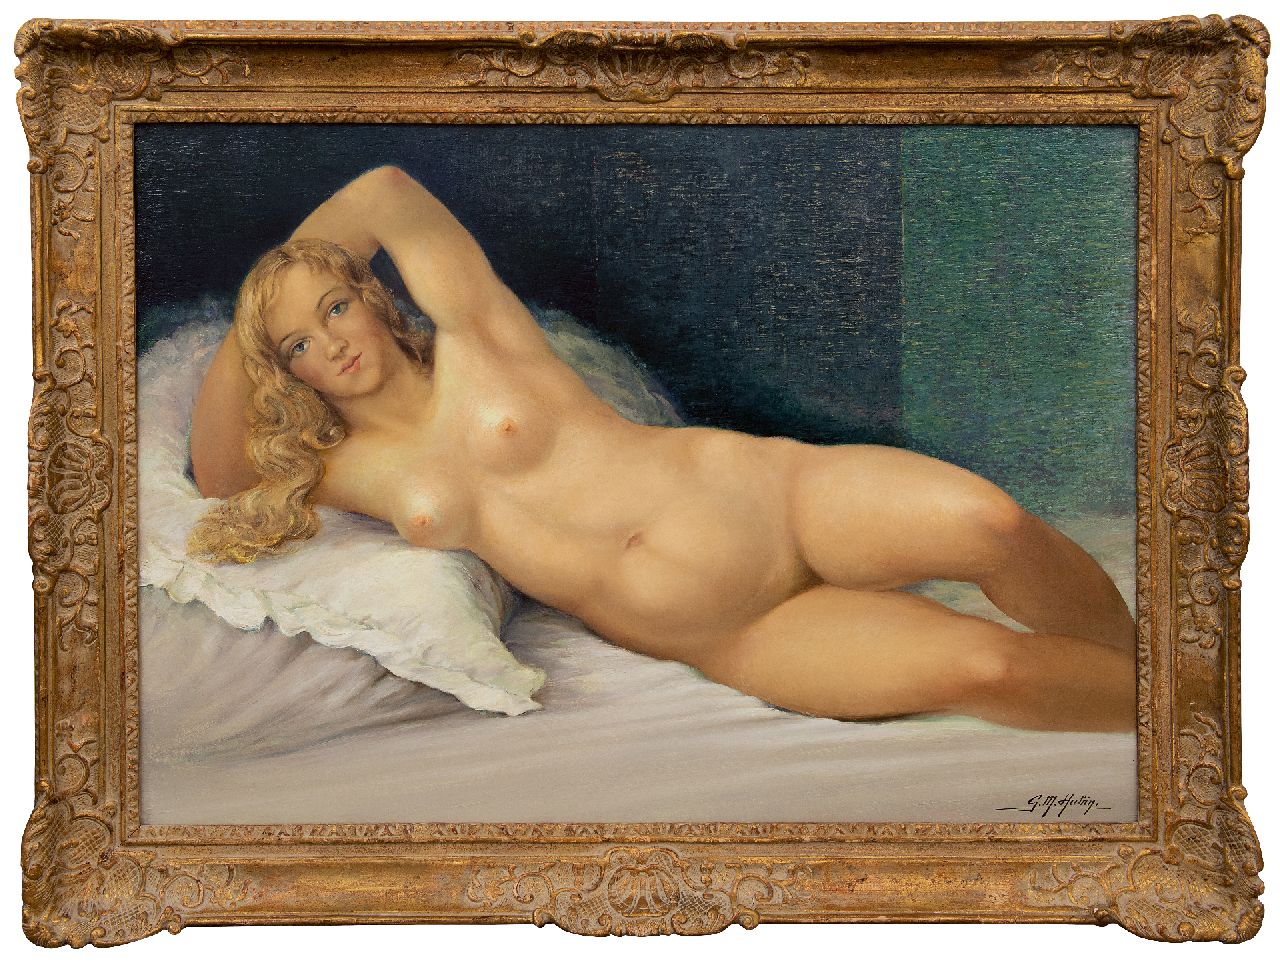 Hubin G.M.  | Gilbert Maurice Hubin | Schilderijen te koop aangeboden | Liggend naakt, olieverf op doek 74,0 x 102,2 cm, gesigneerd rechtsonder